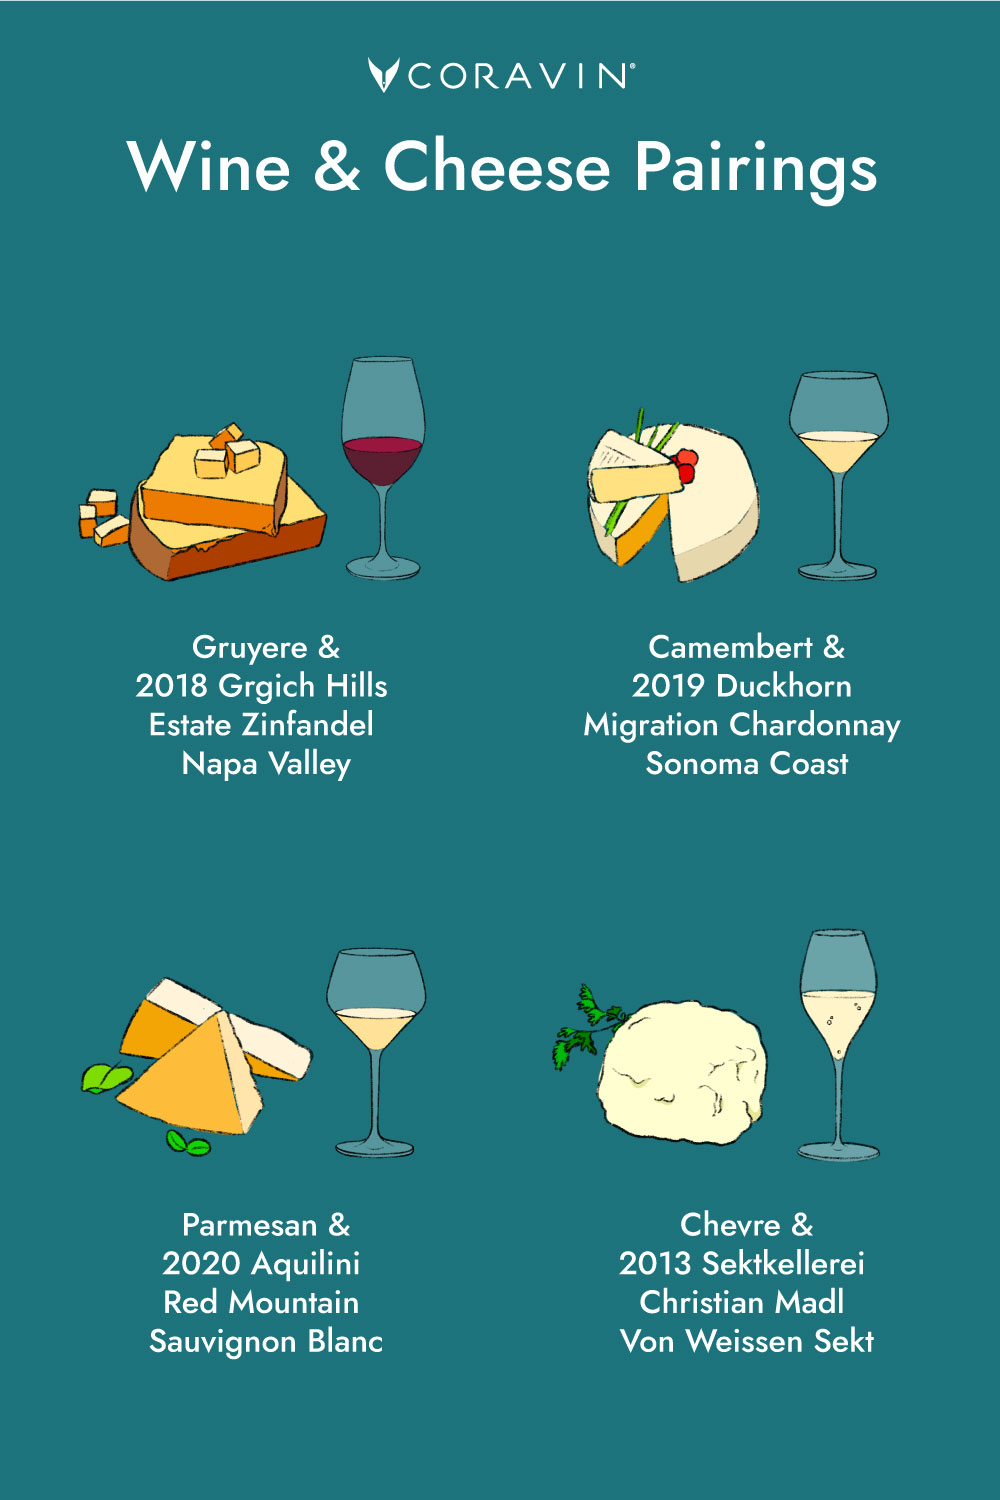 SOC-Cheese-Wine-Pairing-Infographic-V4